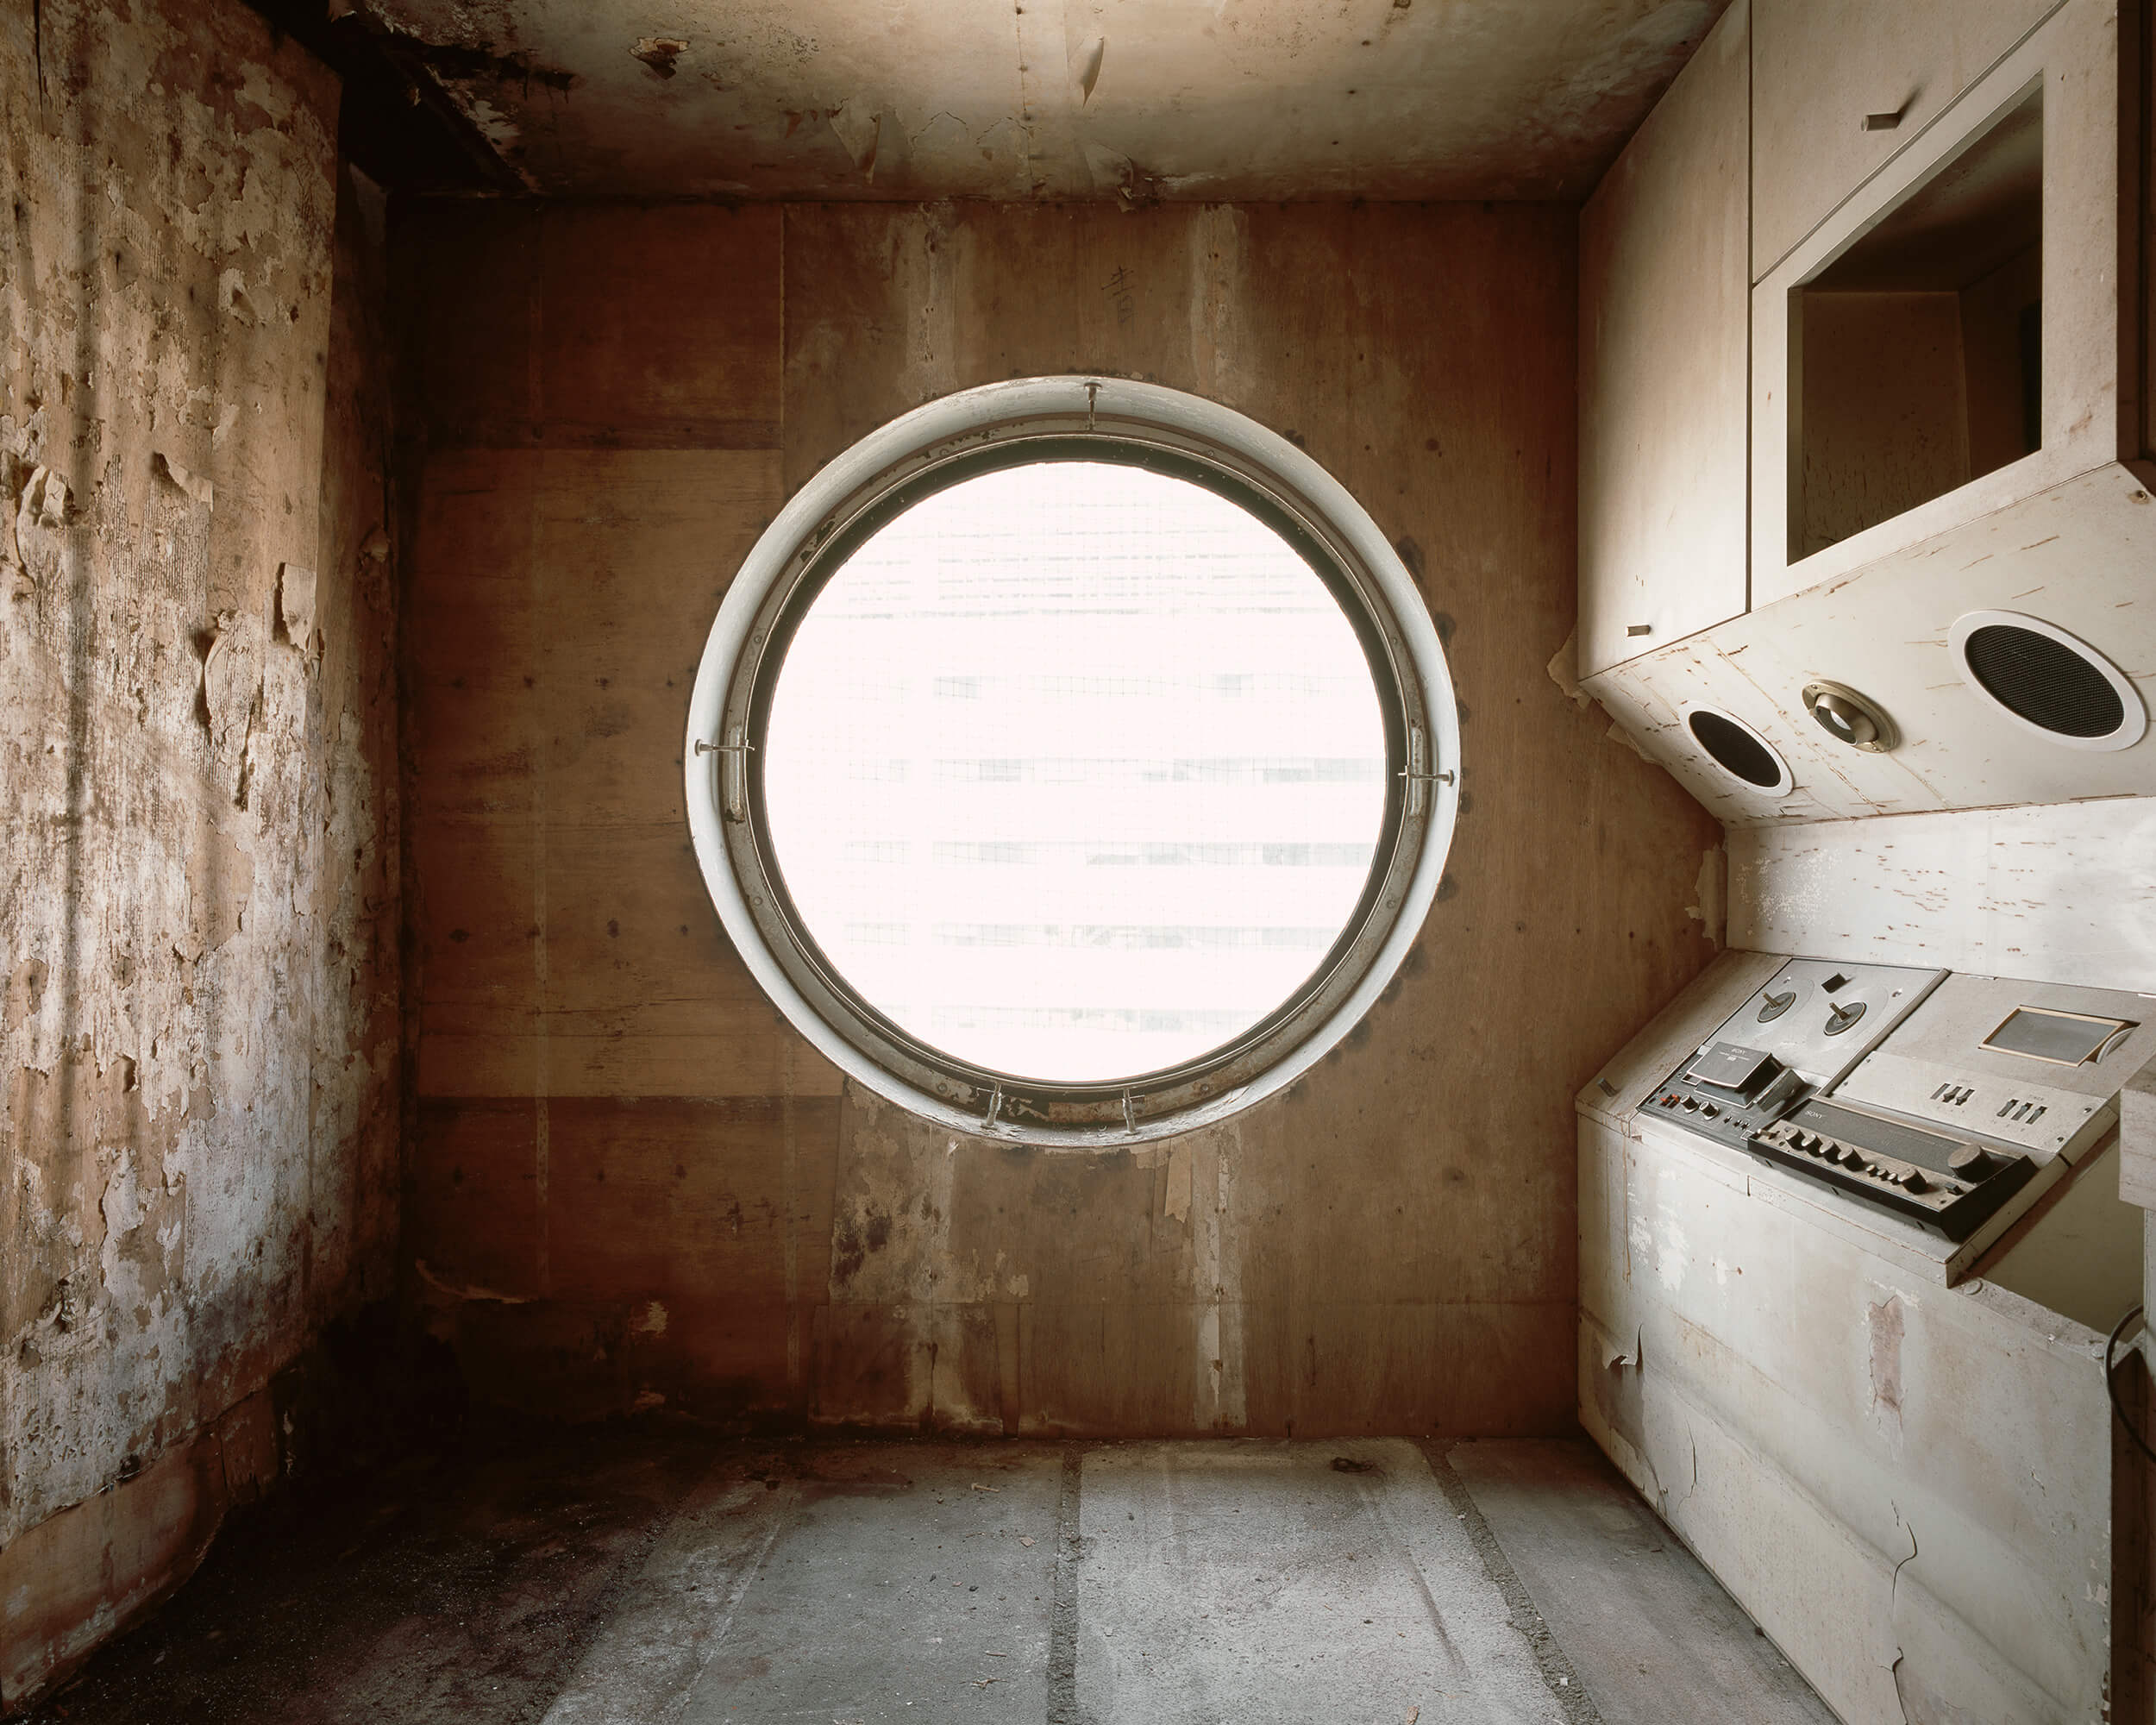 通过一个大的圆形窗户，可以看到一个废弃的、腐朽的生活空间